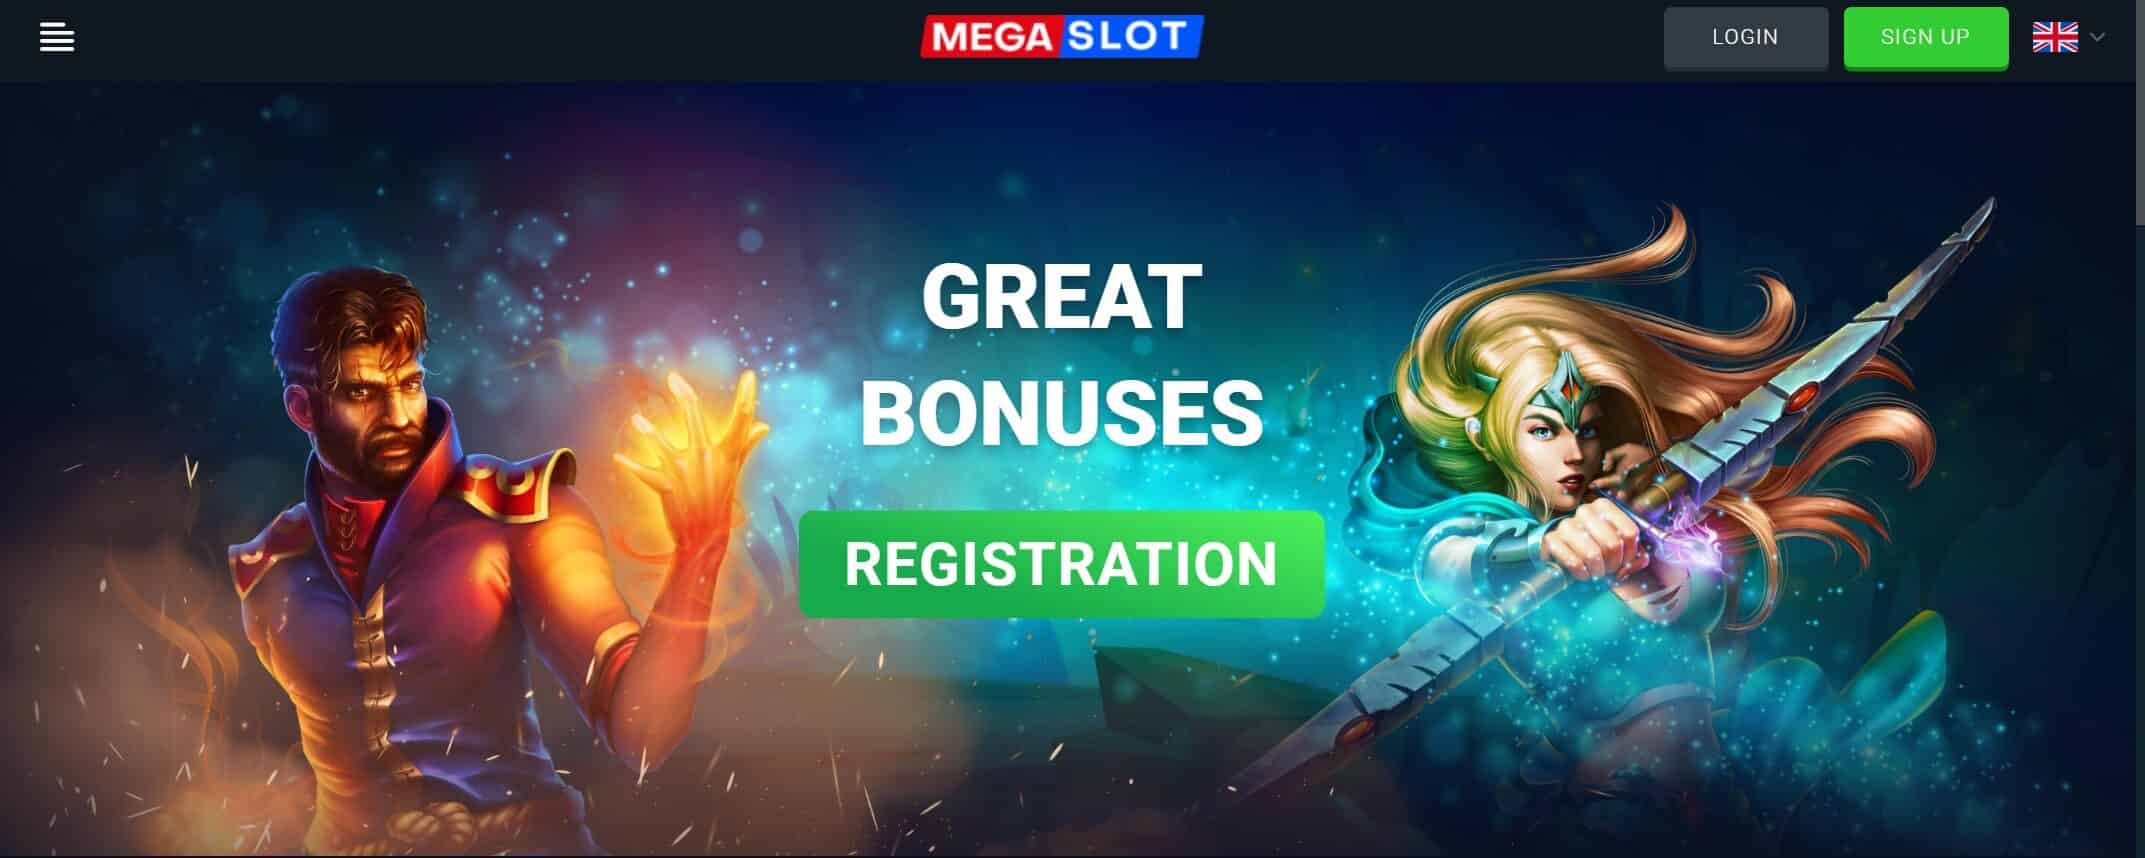 Megaslot Casino Bonuses